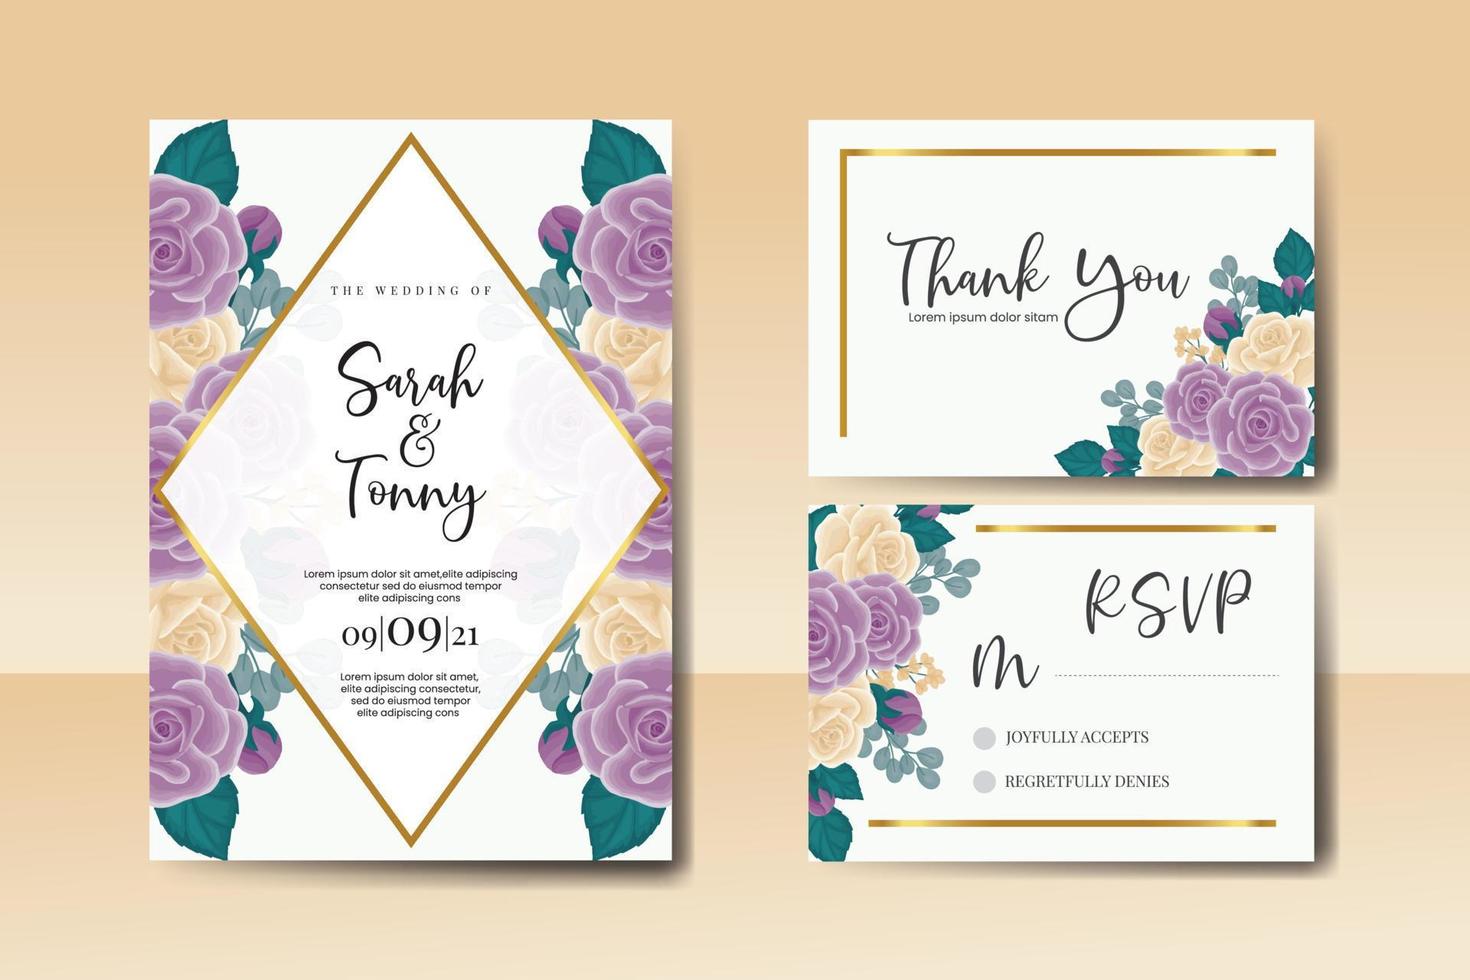 Boda invitación marco colocar, floral acuarela digital mano dibujado Rosa flor diseño invitación tarjeta modelo vector